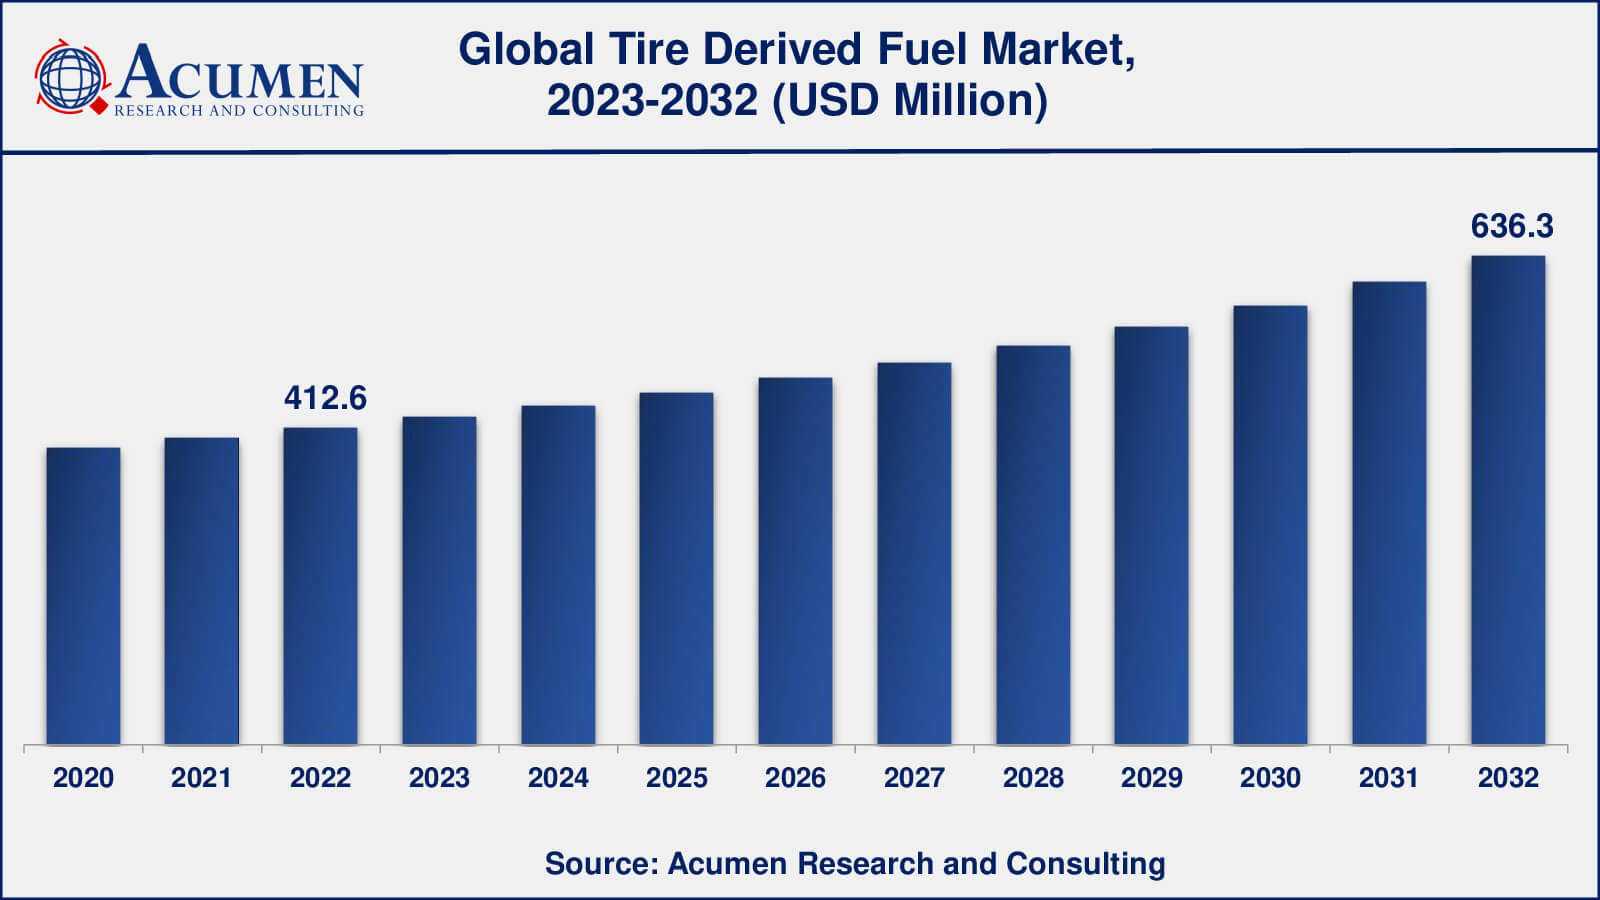 Tire Derived Fuel Market Analysis Period